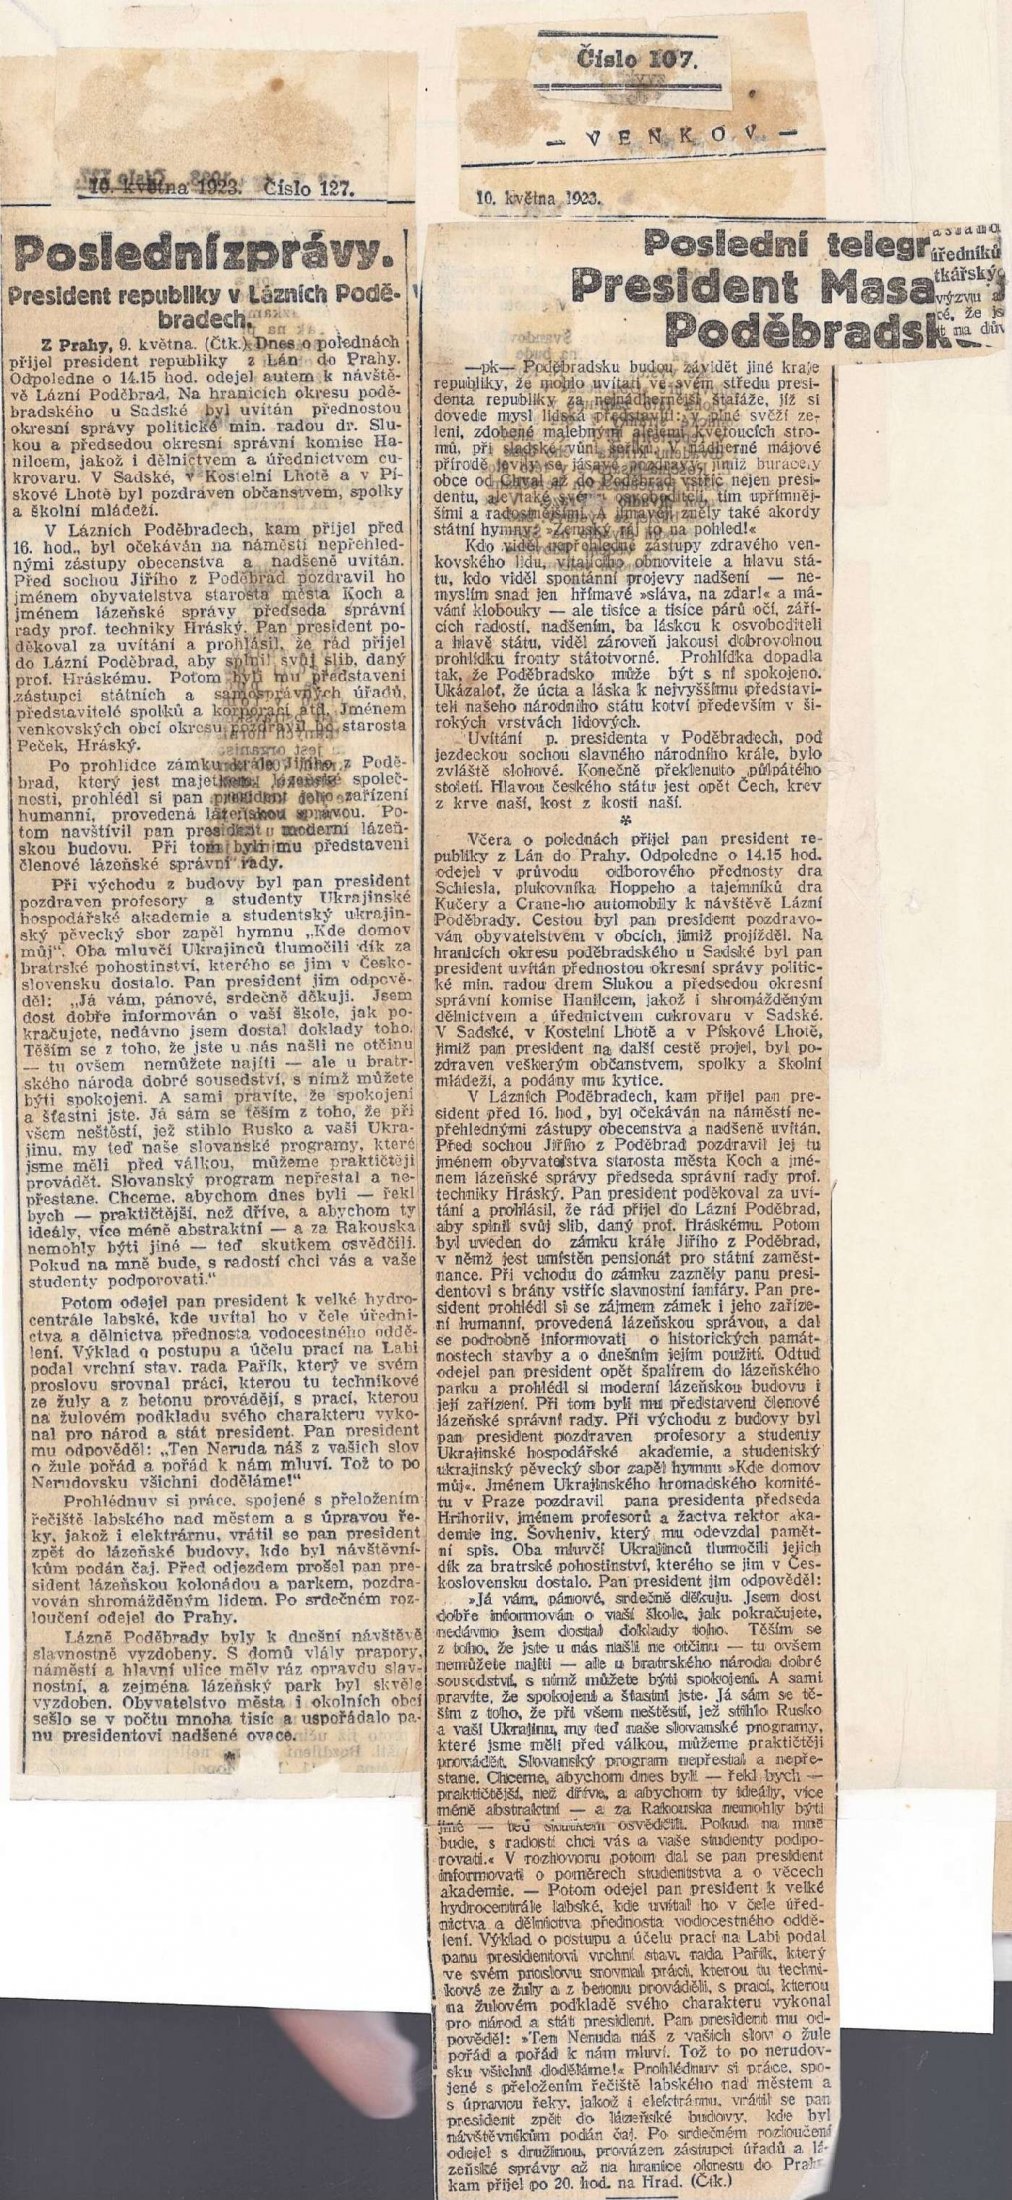 Вирізки з чеських газет про перебування Президента Чехословацької Республіки Томаша Масарика в Подєбрадах. 10 травня 1923 р.